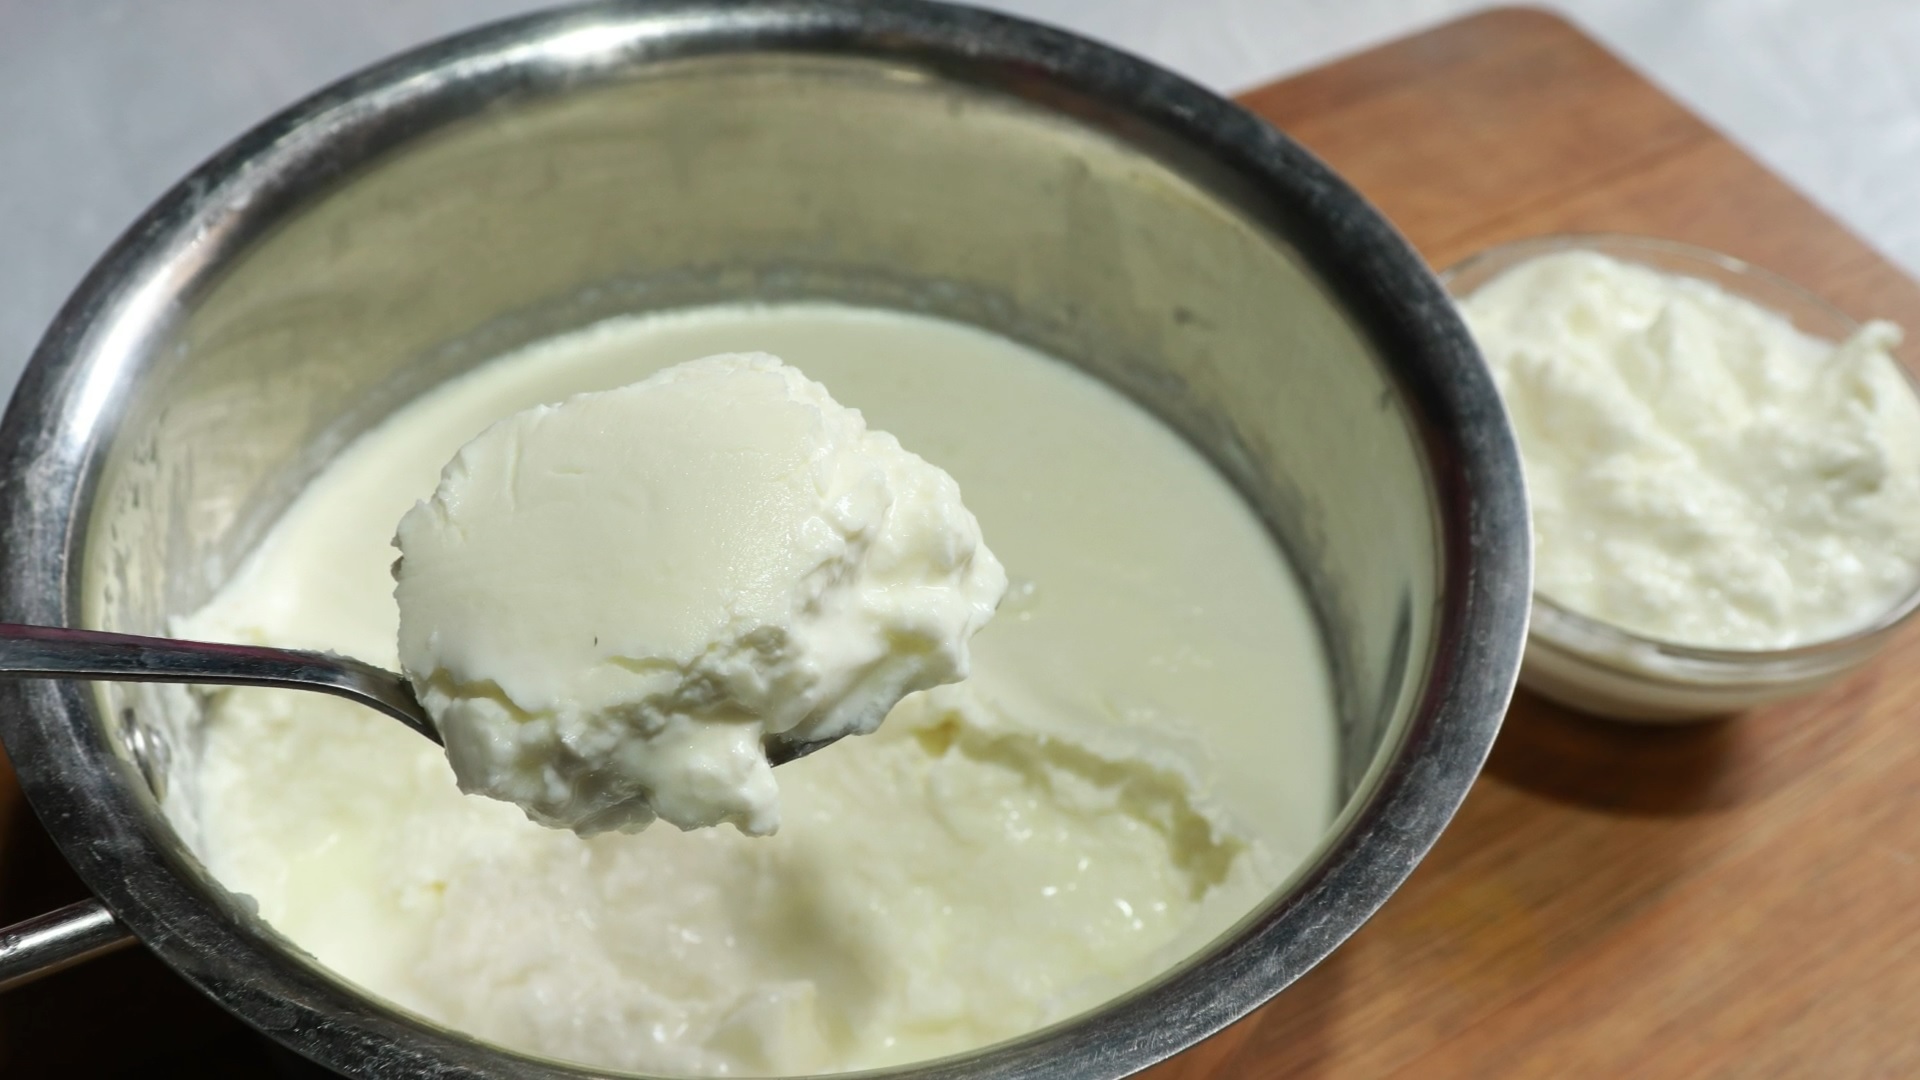 दूध में बस यह एक चीज मिला दे फिर देखिए कितनी मोटे थक्के वाली दही बनकर तैयार होती है | Dahi Recipe | Amma Ki Thaali